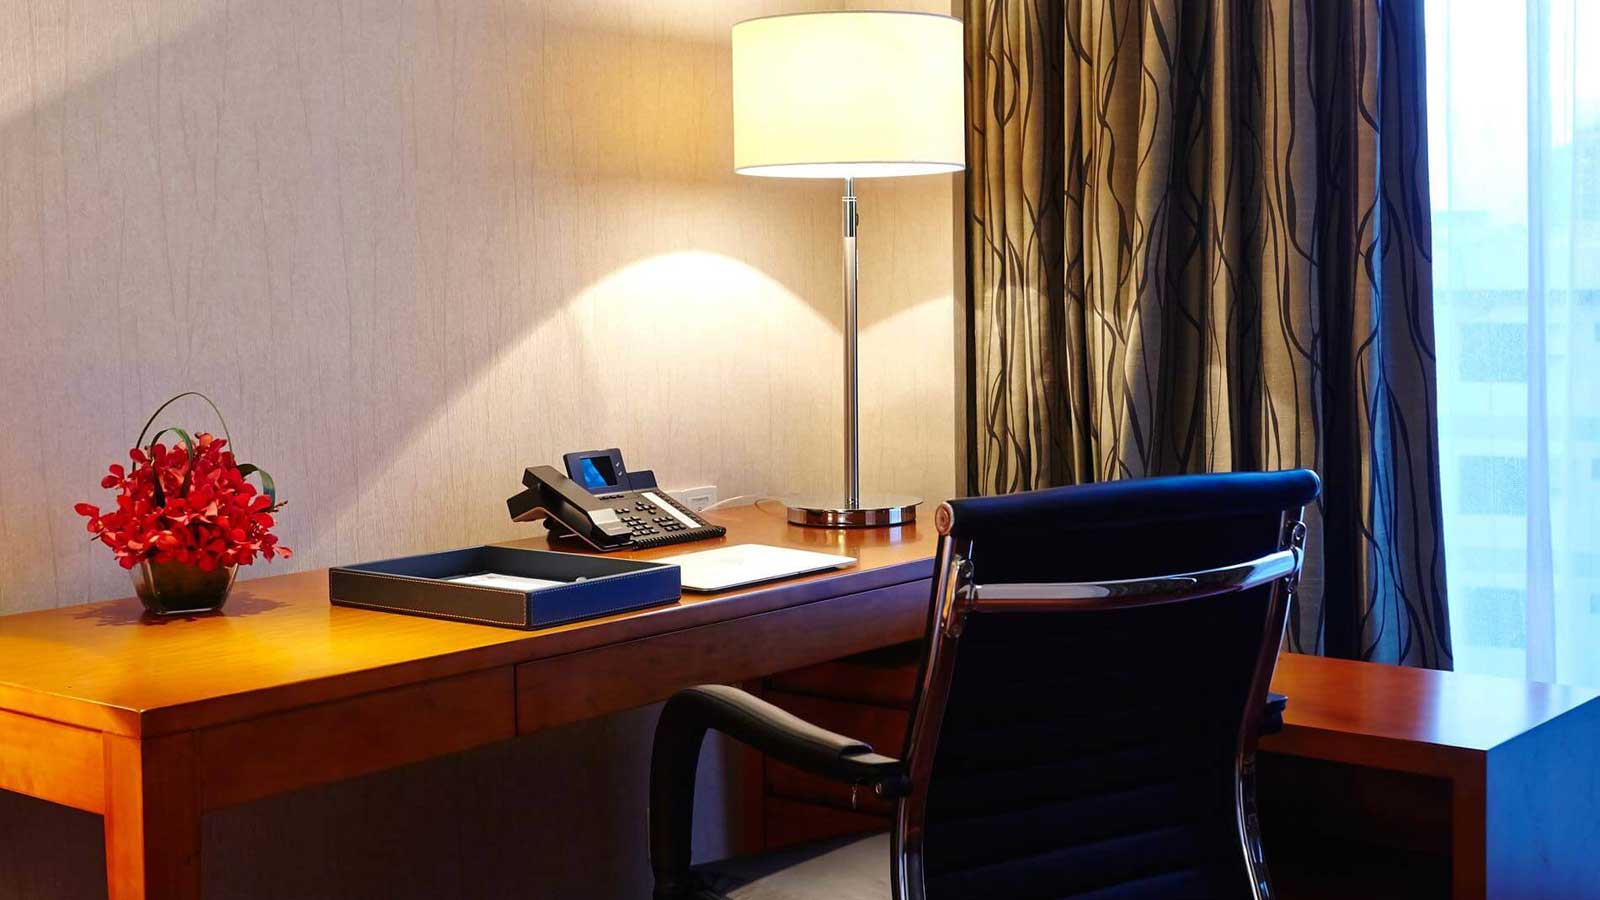 โต๊ะทำงาน - ห้องดีลักซ์ - โรงแรม อมารี ธากา บังคลาเทศ - อมารี ธากา บังคลาเทศ